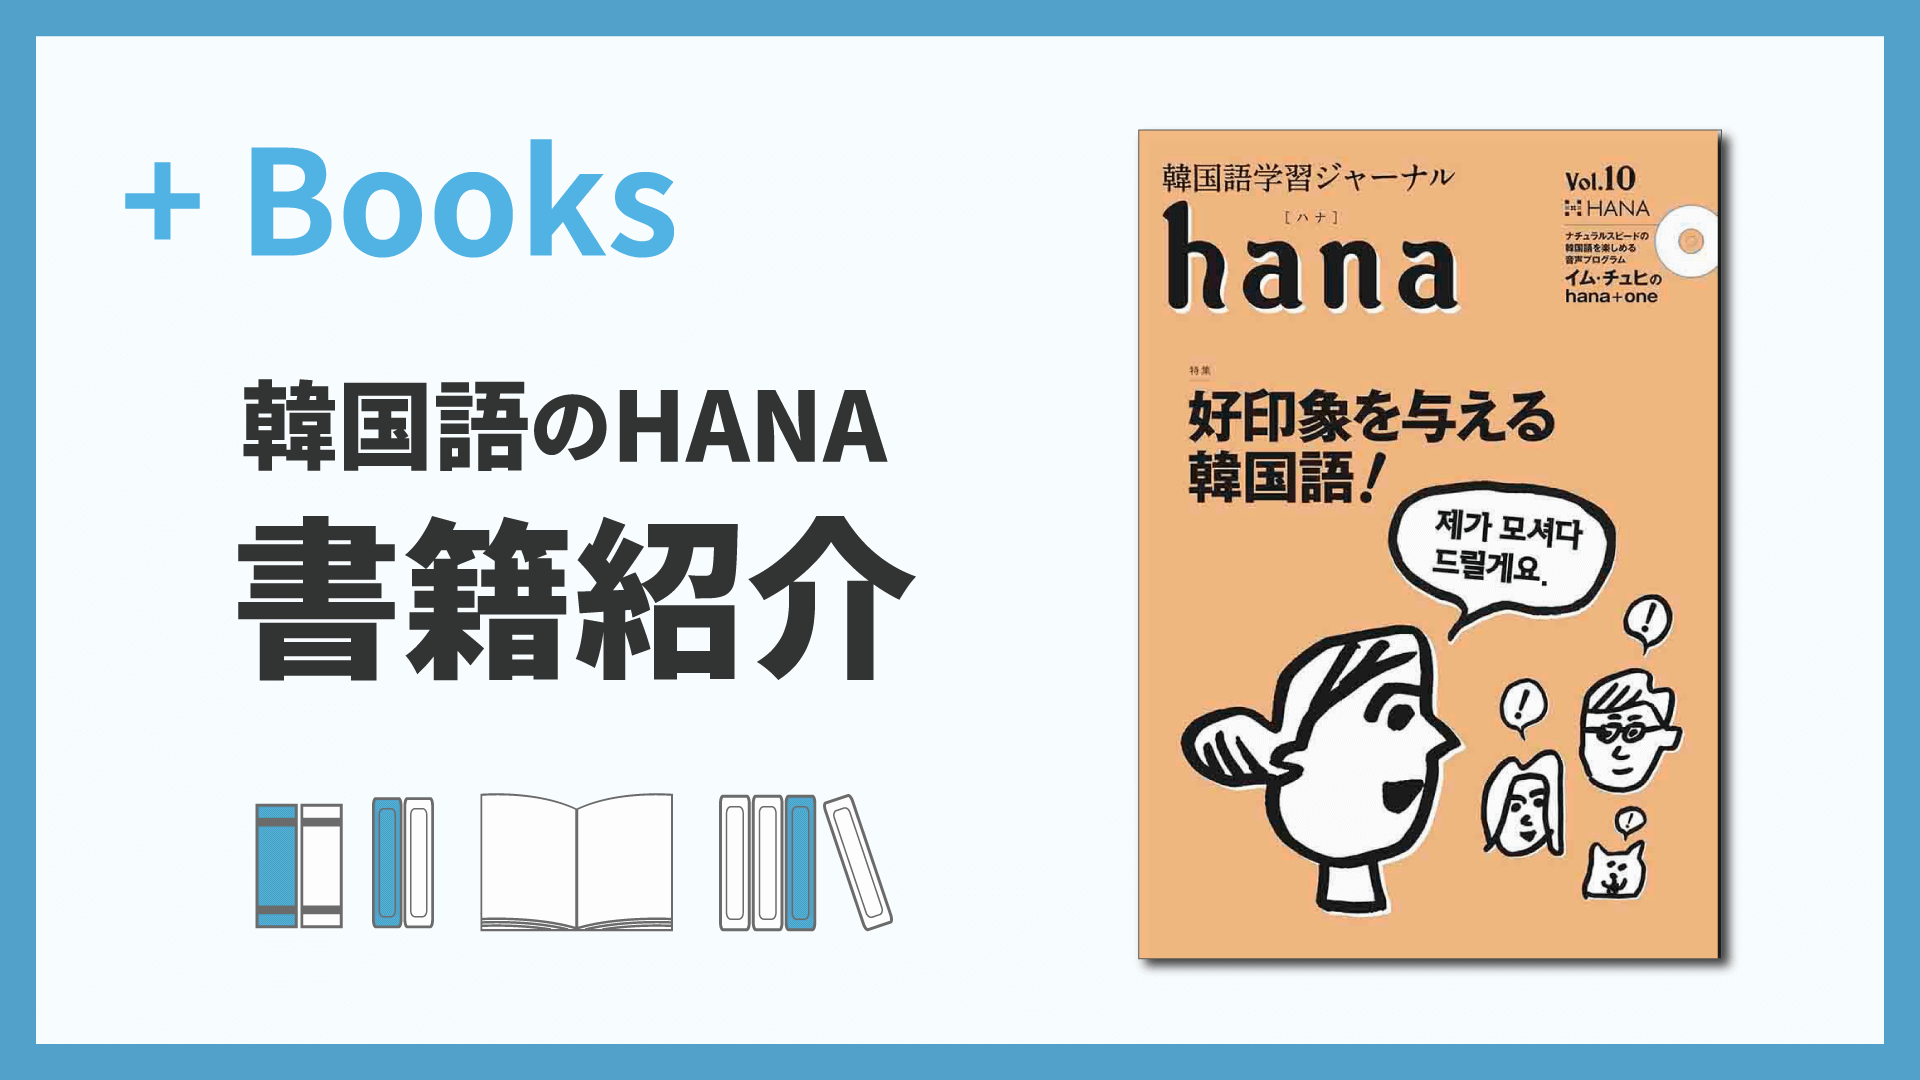 韓国語学習ジャーナルhana Vol.10「好印象を与える韓国語」